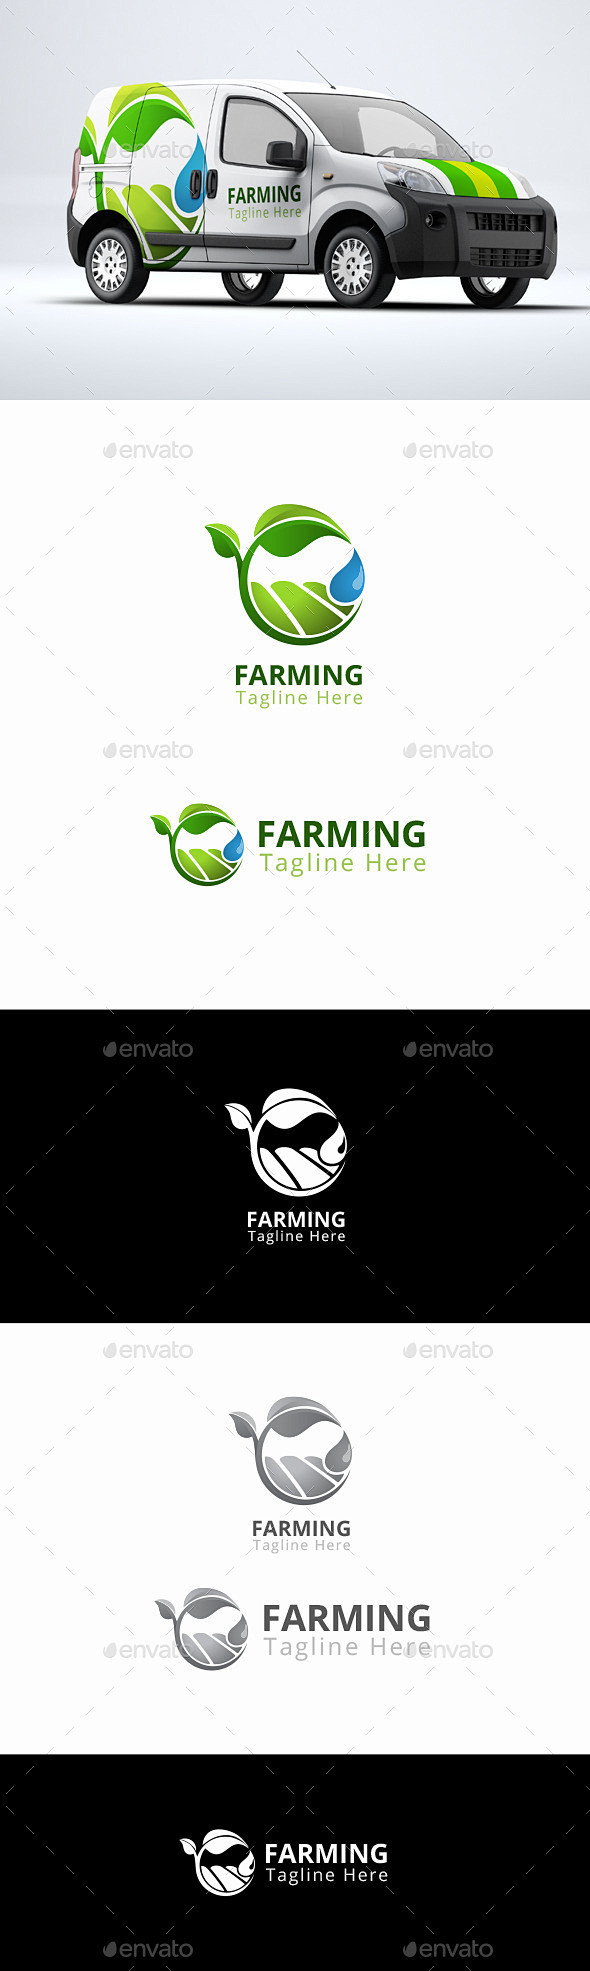 自然农业-农业标志模板标识模板Farmi...